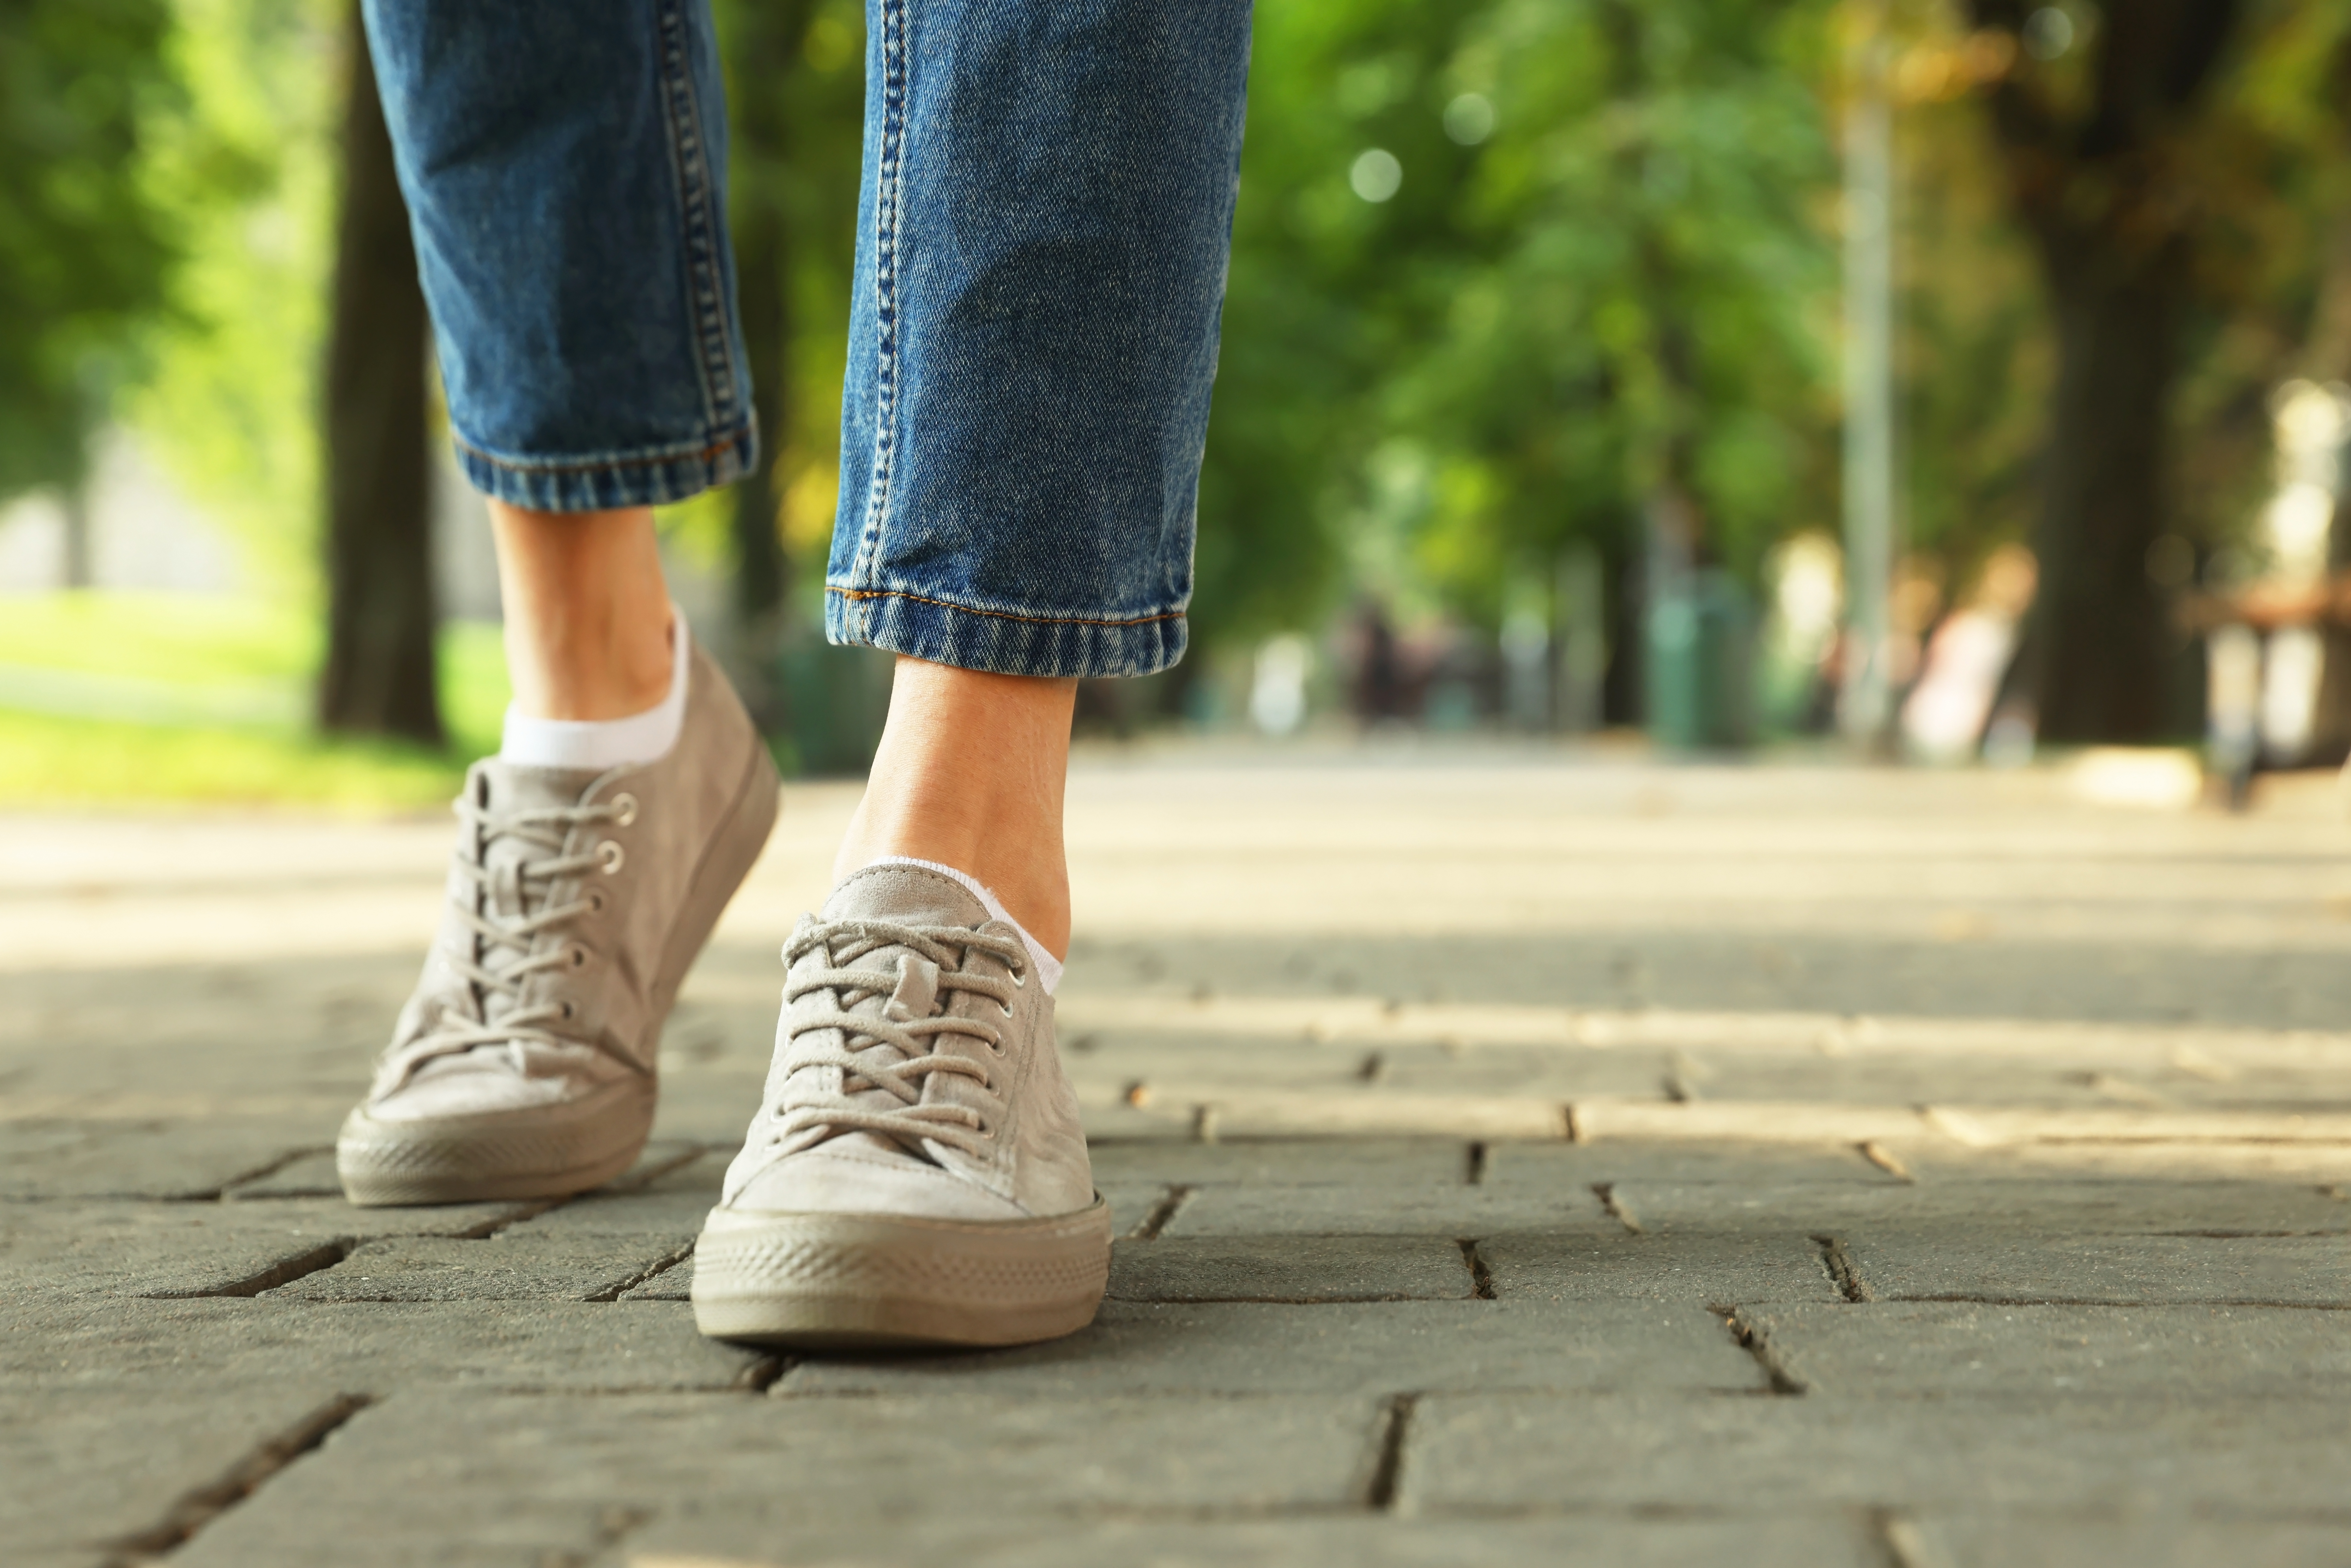 Woman in stylish sneakers | Source: Shutterstock